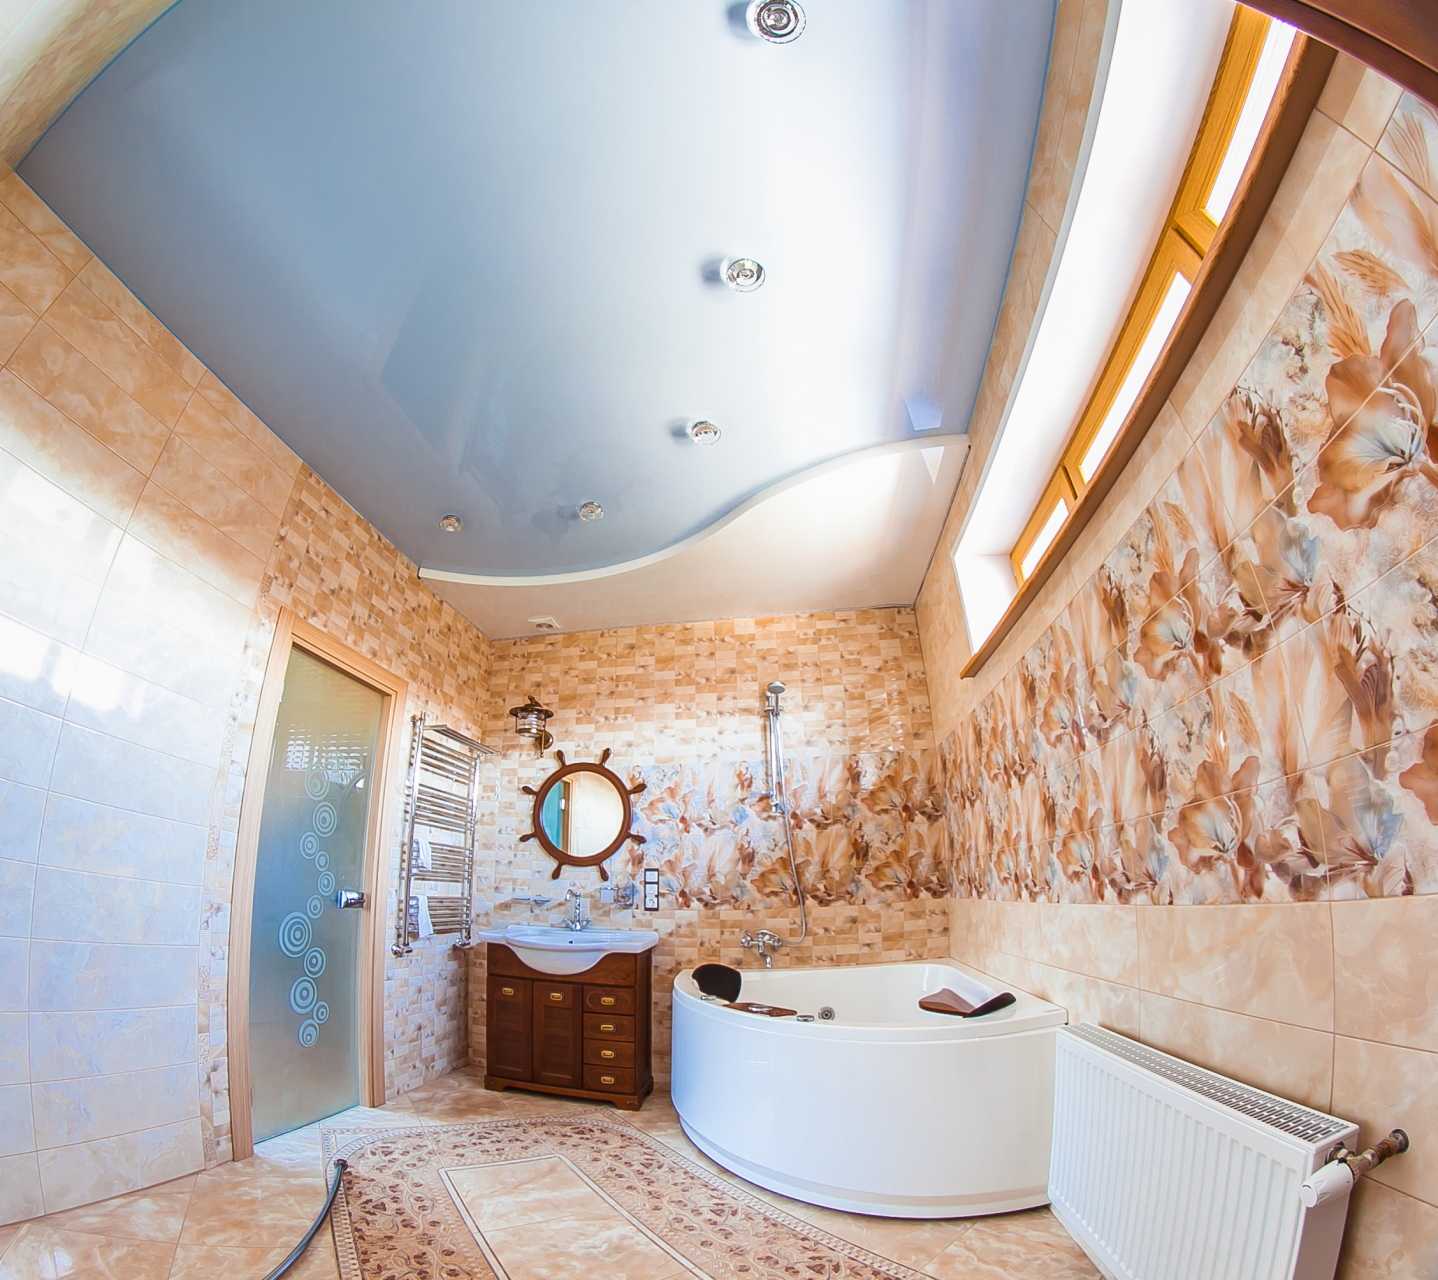 Натяжной потолок можно сделать не только в гостиной, но и ванной комнате. Просто нужно правильно подобрать вид. У него есть свои достоинства и особенности.